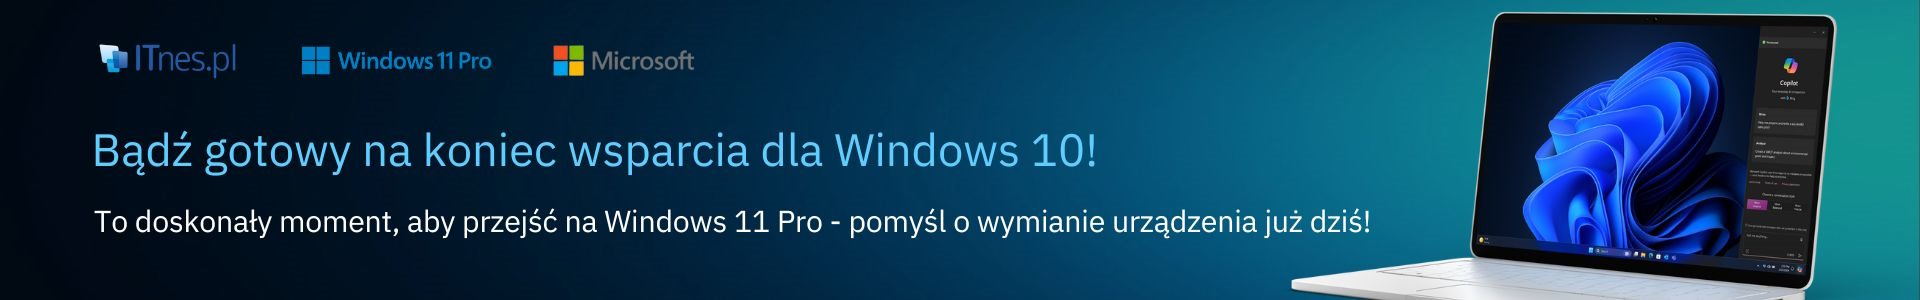 To doskonały moment, aby przejść na Windows 11 Pro - pomyśl o wymianie urządzenia już dziś!